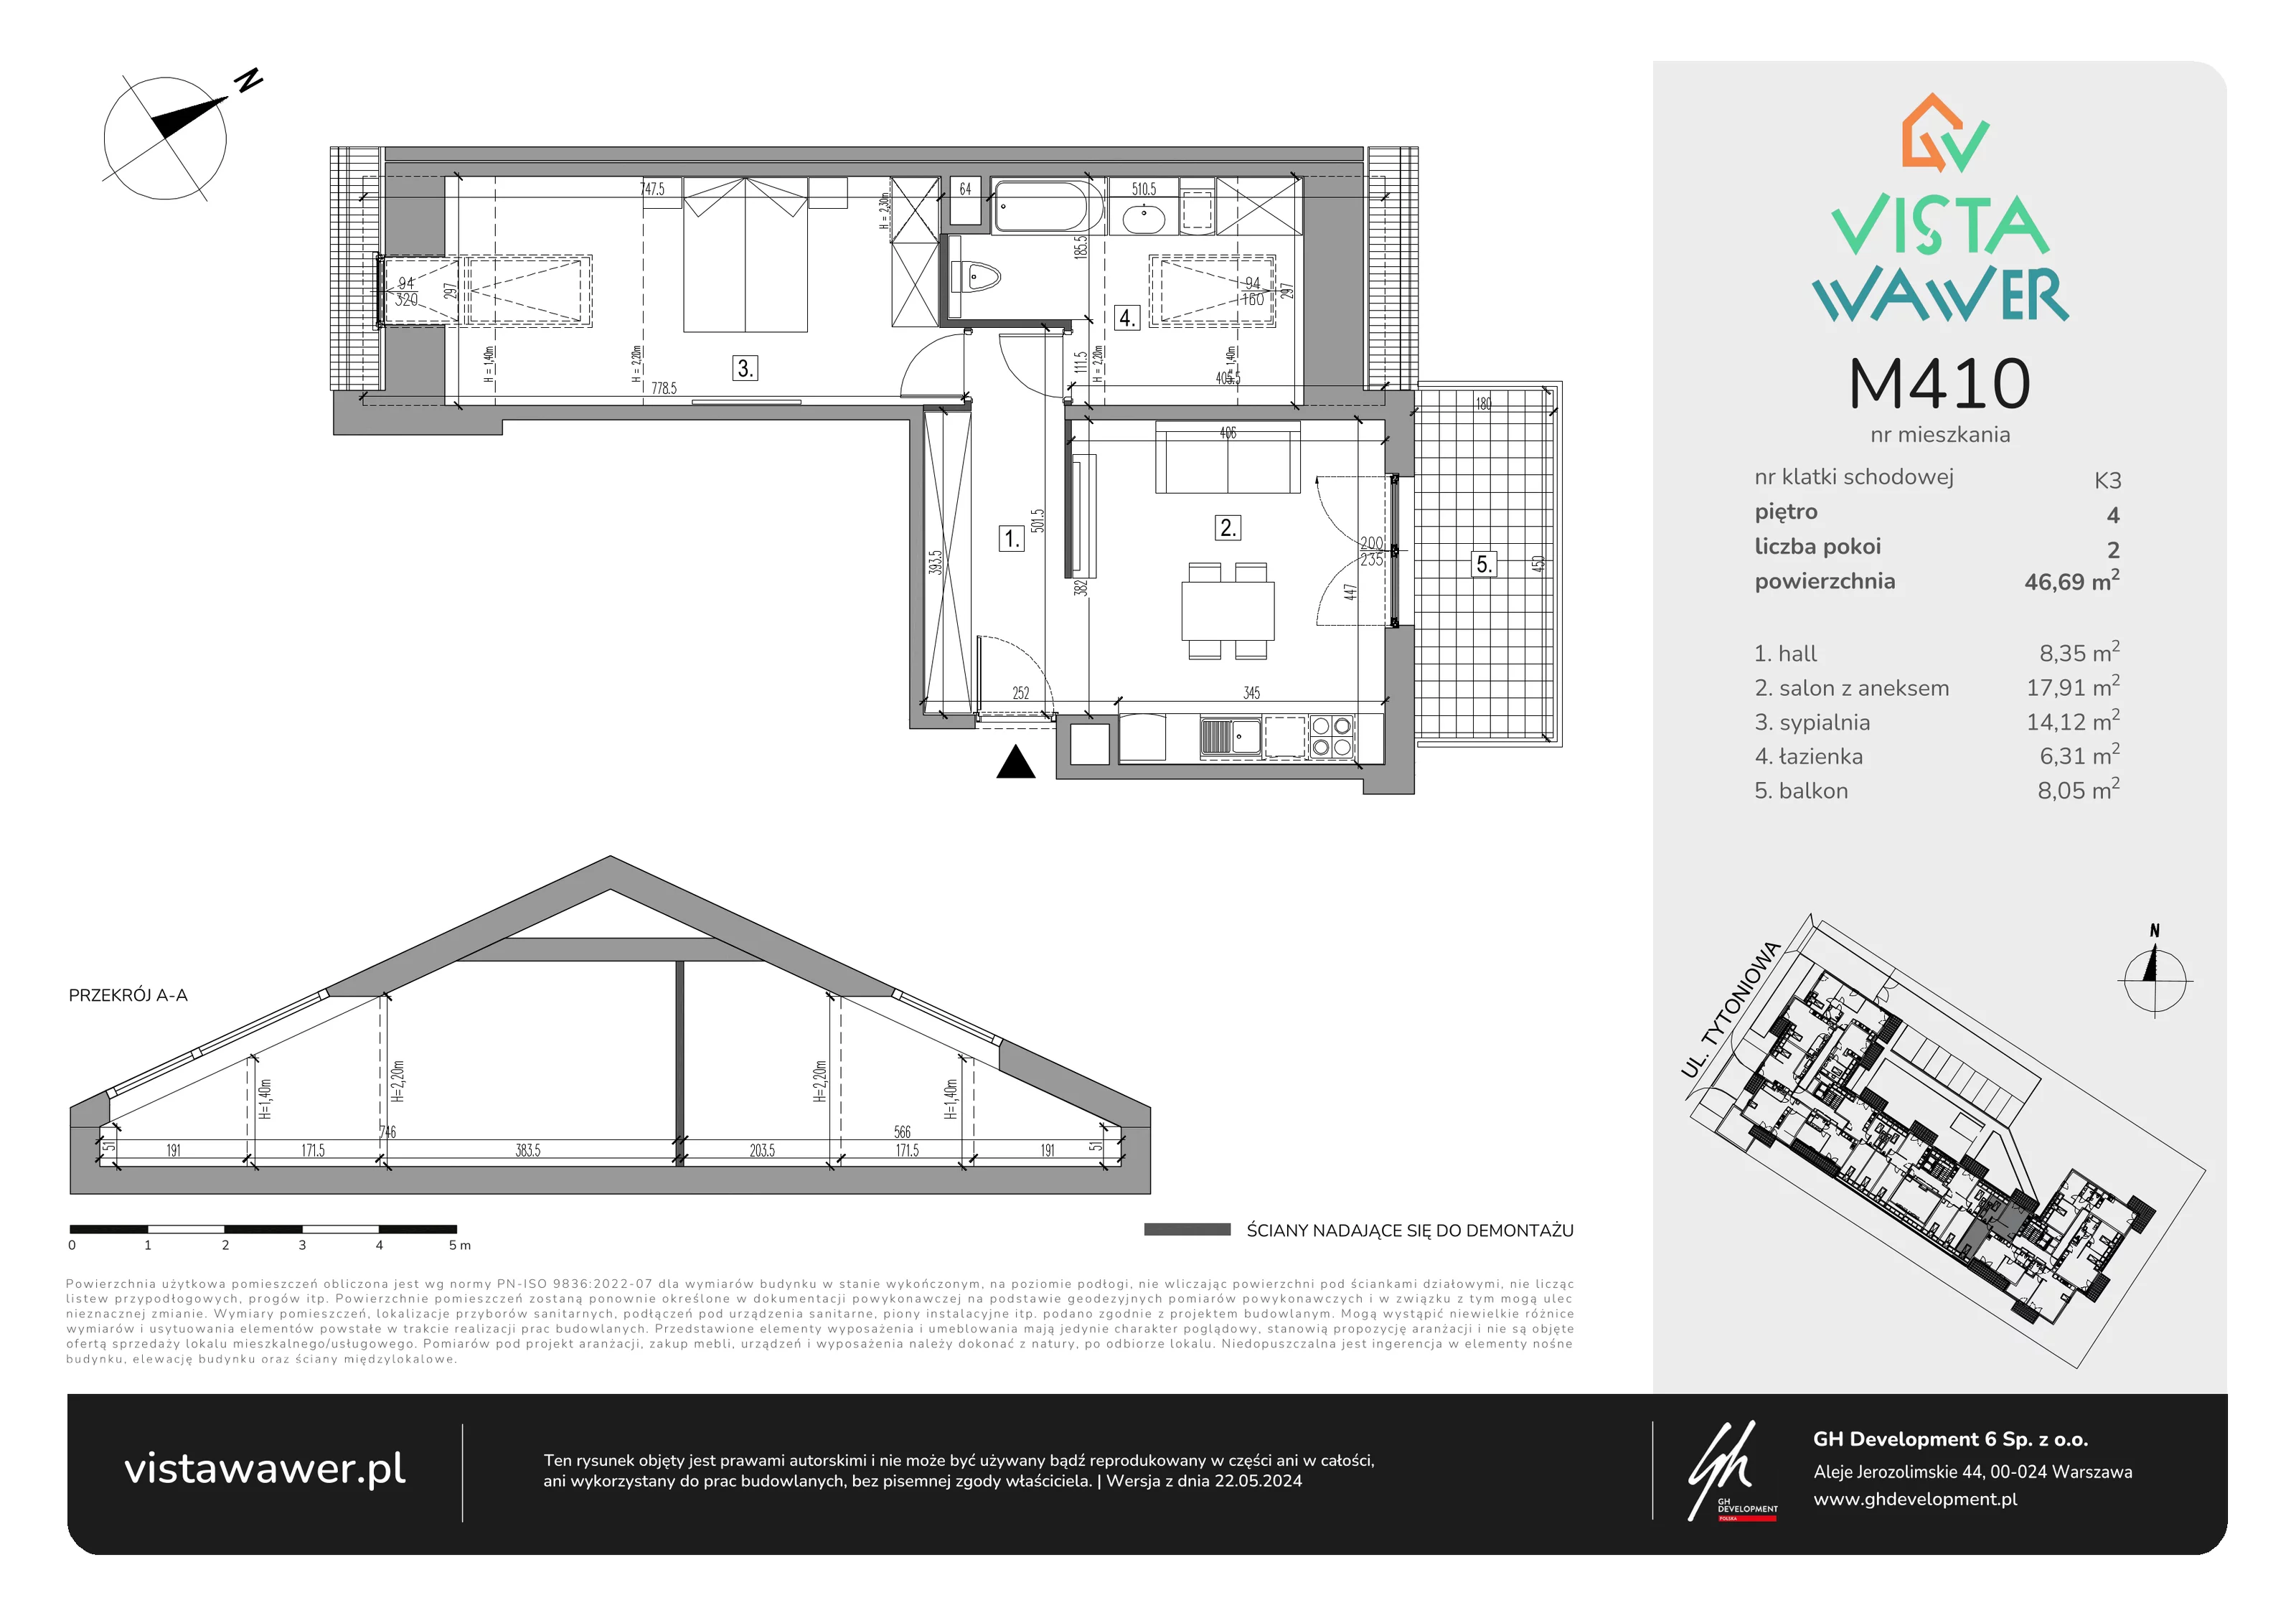 Mieszkanie 46,69 m², piętro 4, oferta nr M410, Vista Wawer, Warszawa, Wawer, Gocławek, ul. Tytoniowa 20